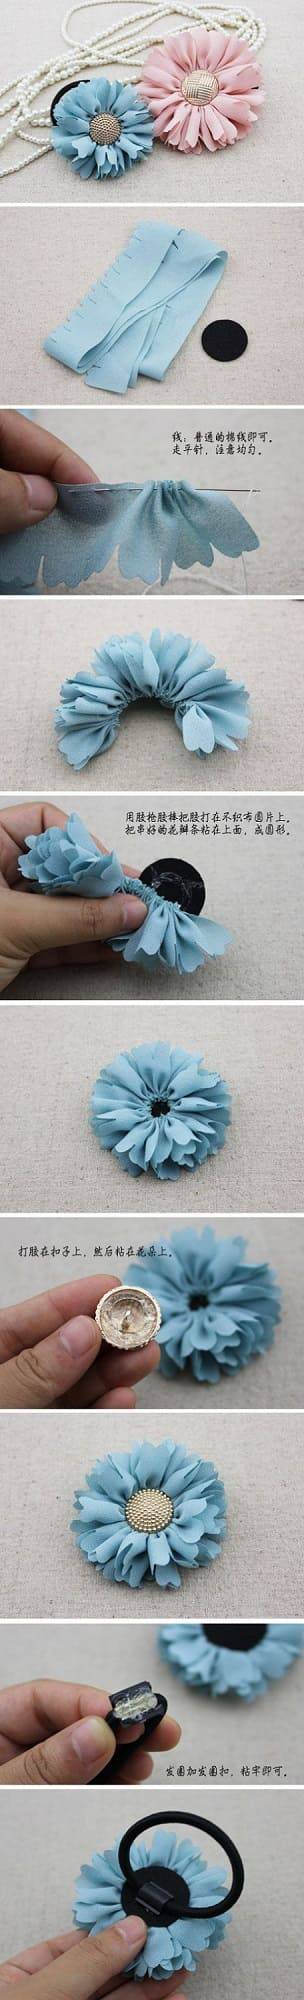 como fazer flor de tecido elastico tutorial